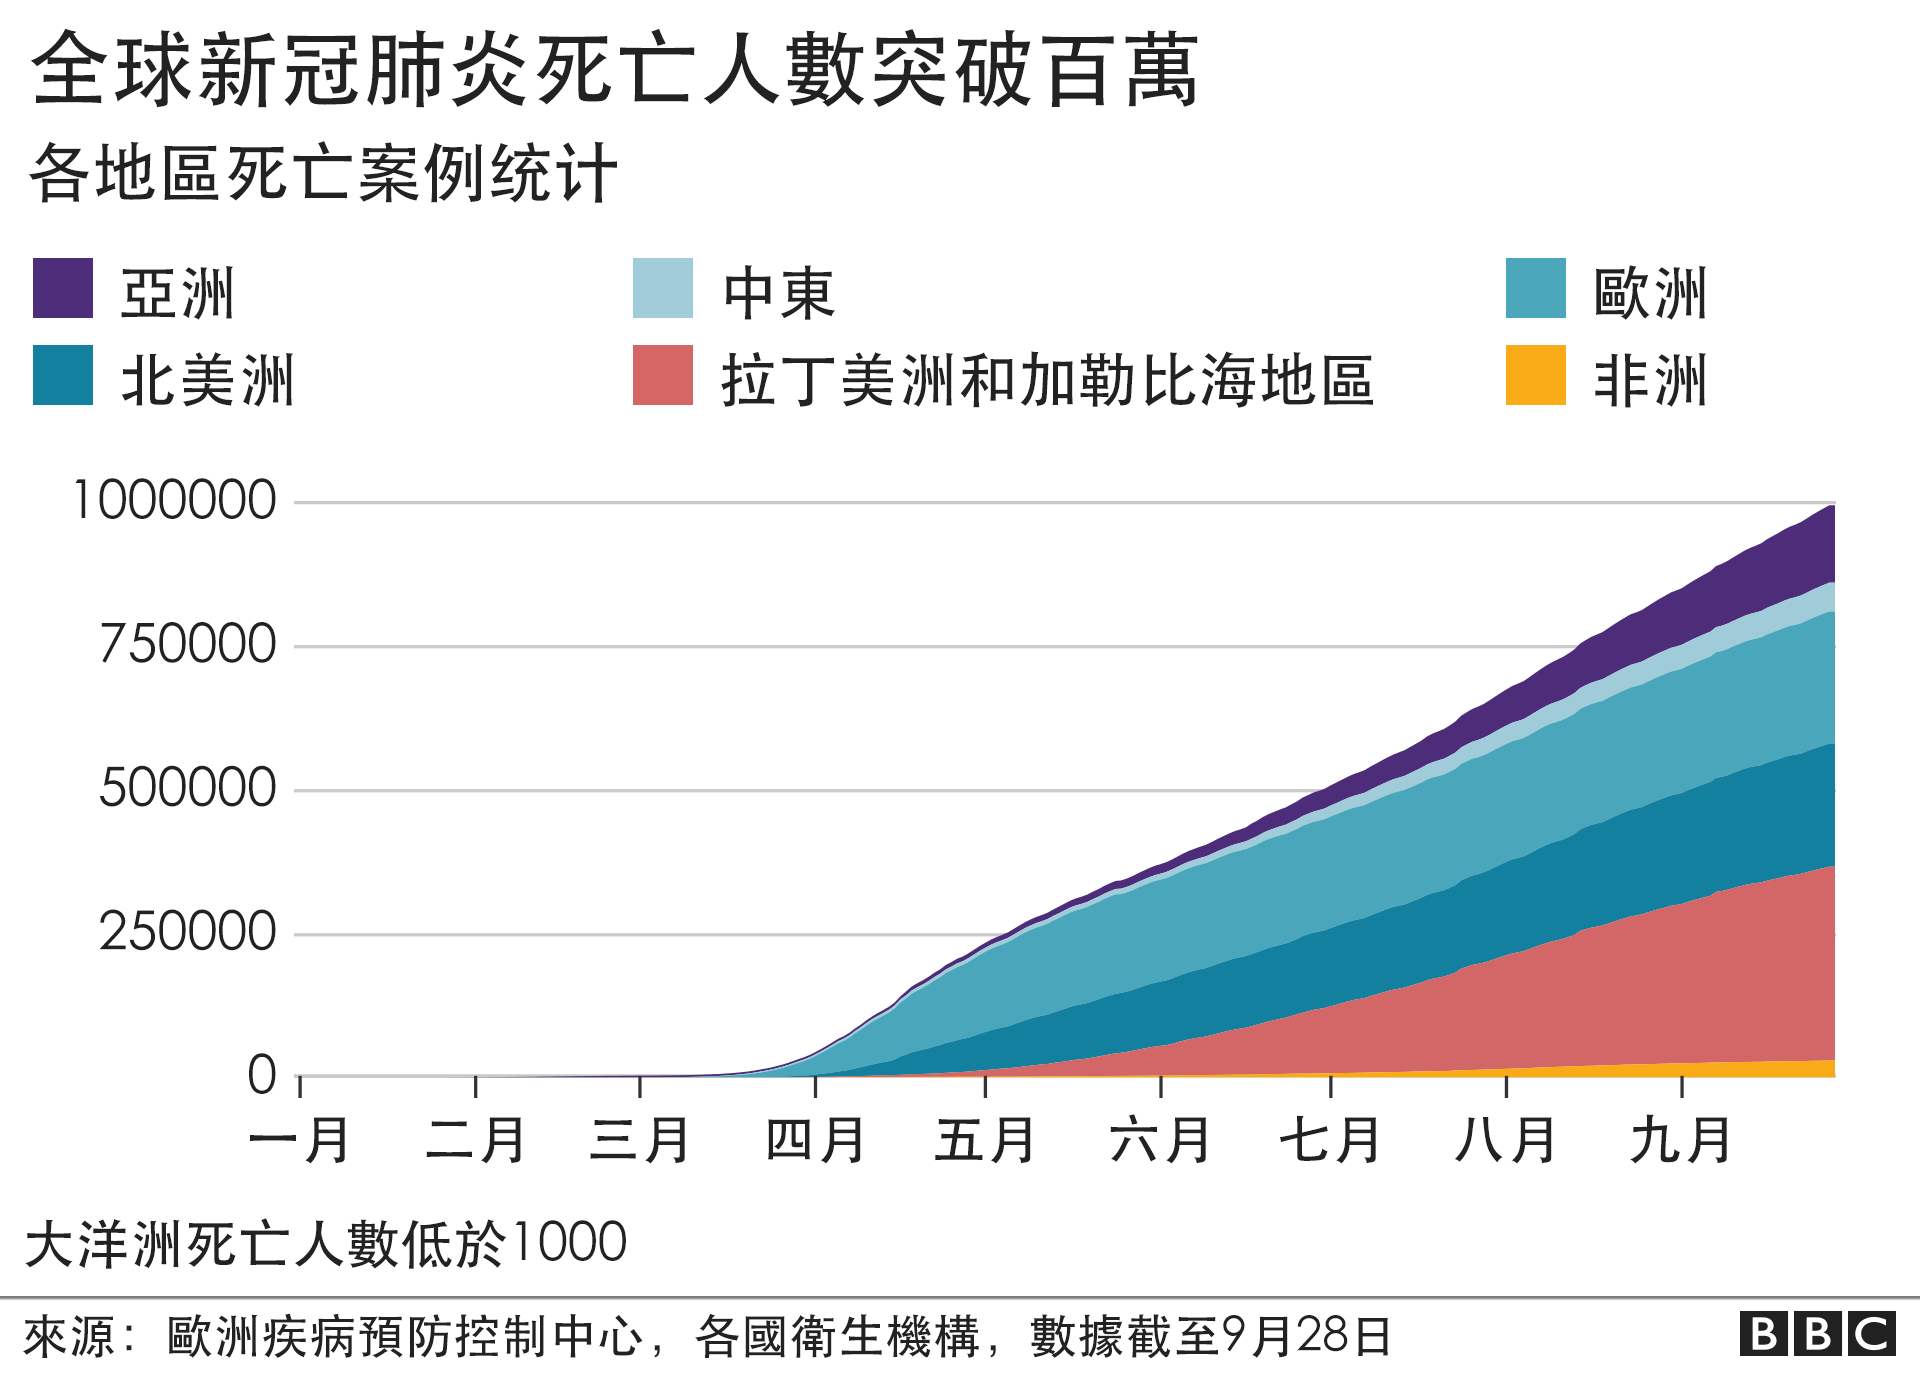 新冠疫情 全球死亡数超过100万 世卫向中低收入国家提供快速检测试剂 c News 中文